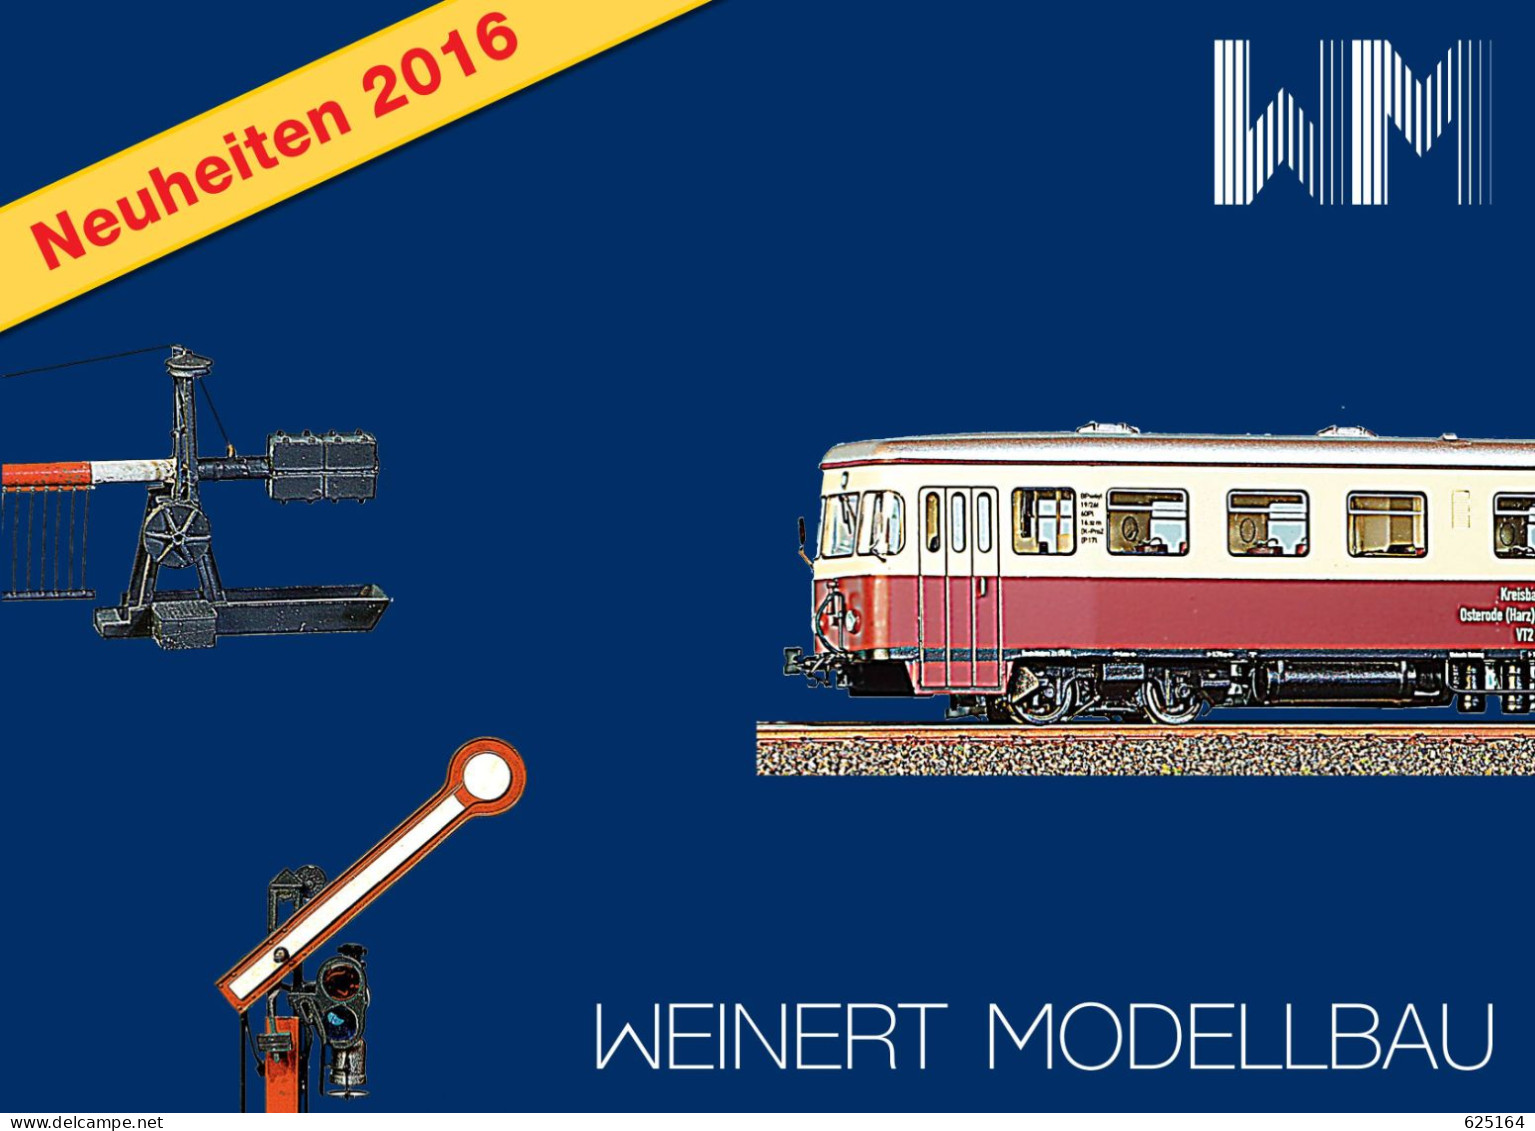 Catalogue WEINERT MODELLBAU 2016 Neuheiten Messing Bausatz Spur HO Z N TT O 1 - Allemand